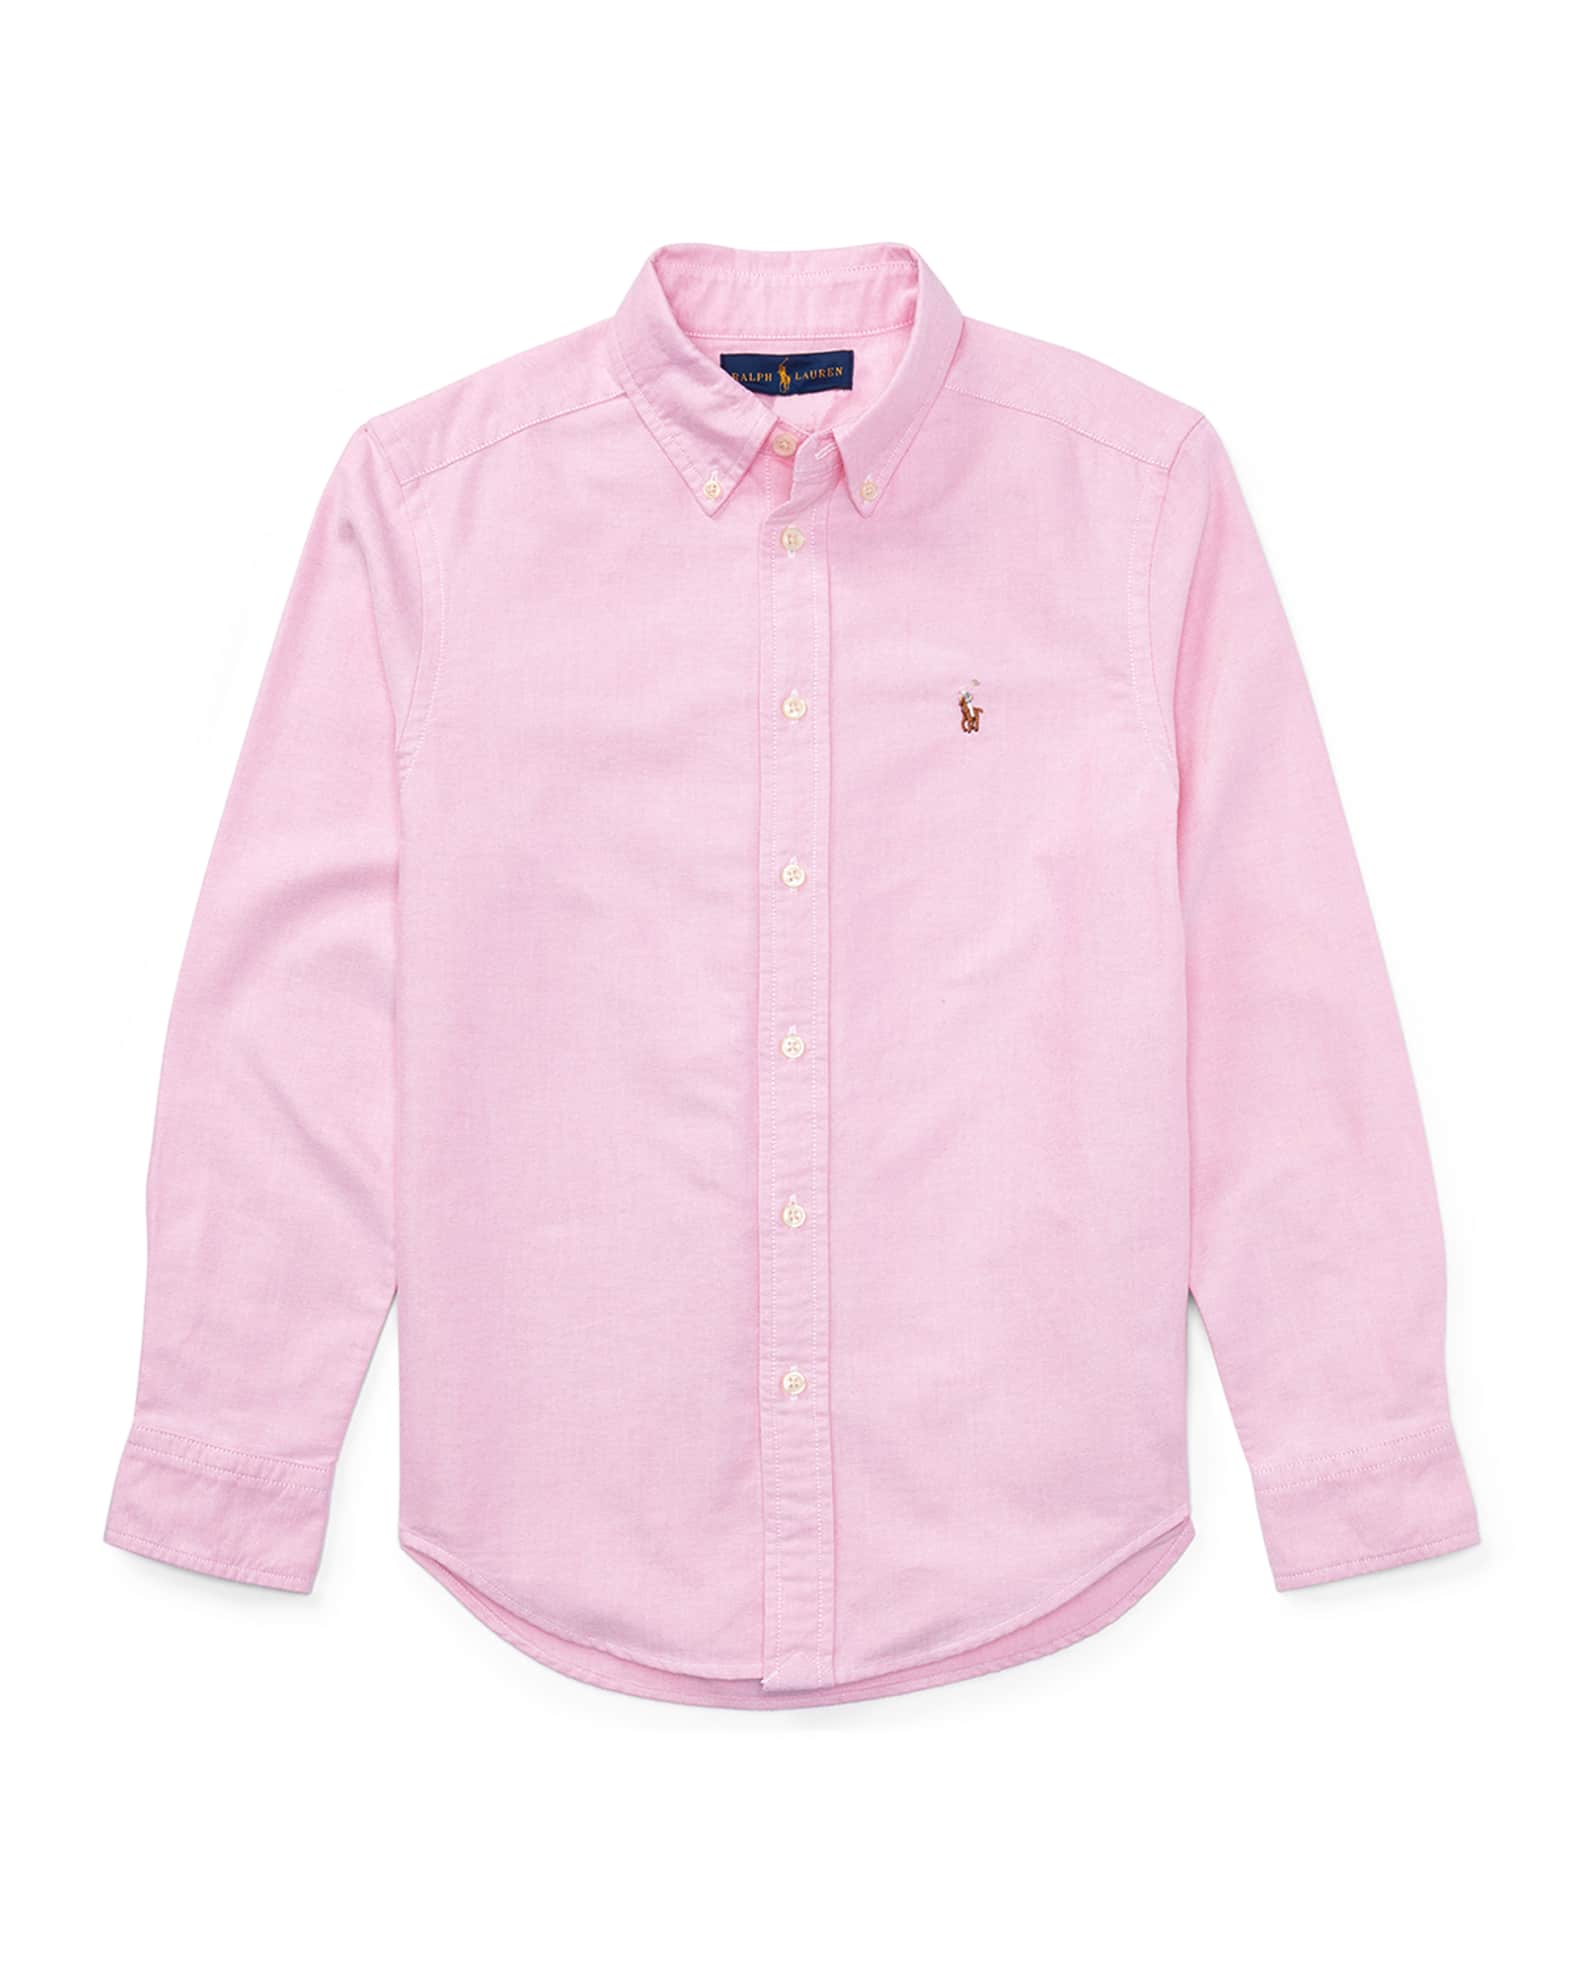 Boy's Cotton Oxford Sport Shirt, Size S-XL 0